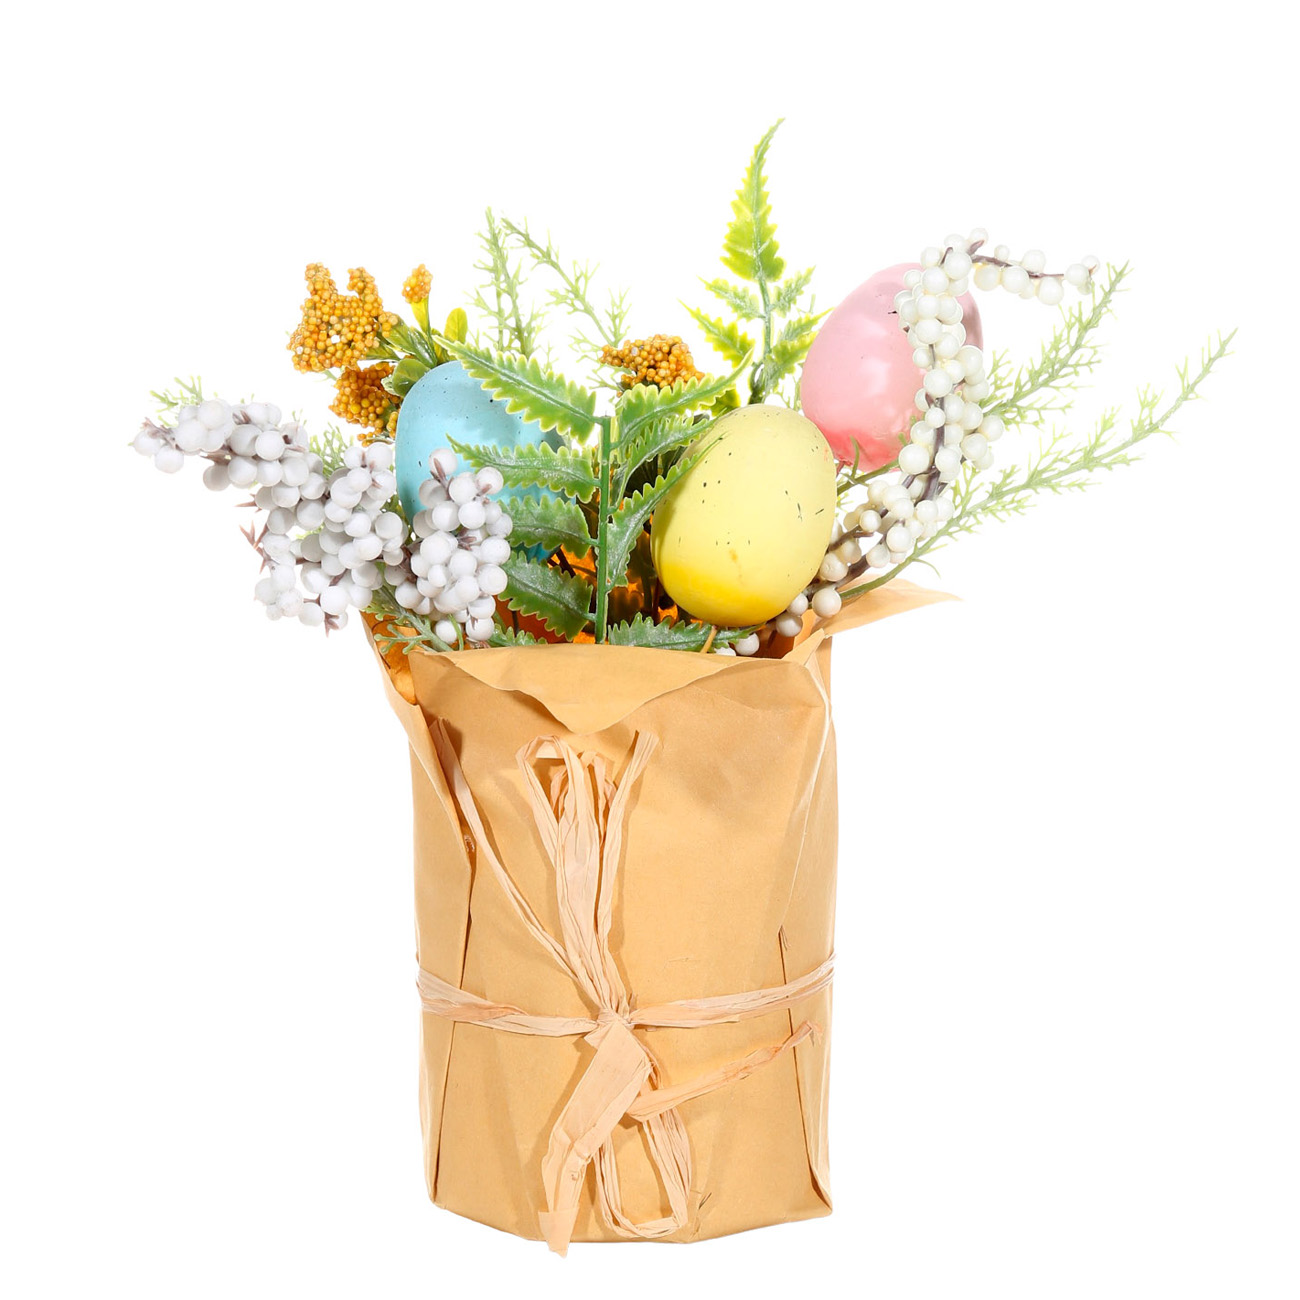 Композиция декоративная, 25 см, в крафте, пластик, Разноцветные яйца и цветы, Easter - фото 1